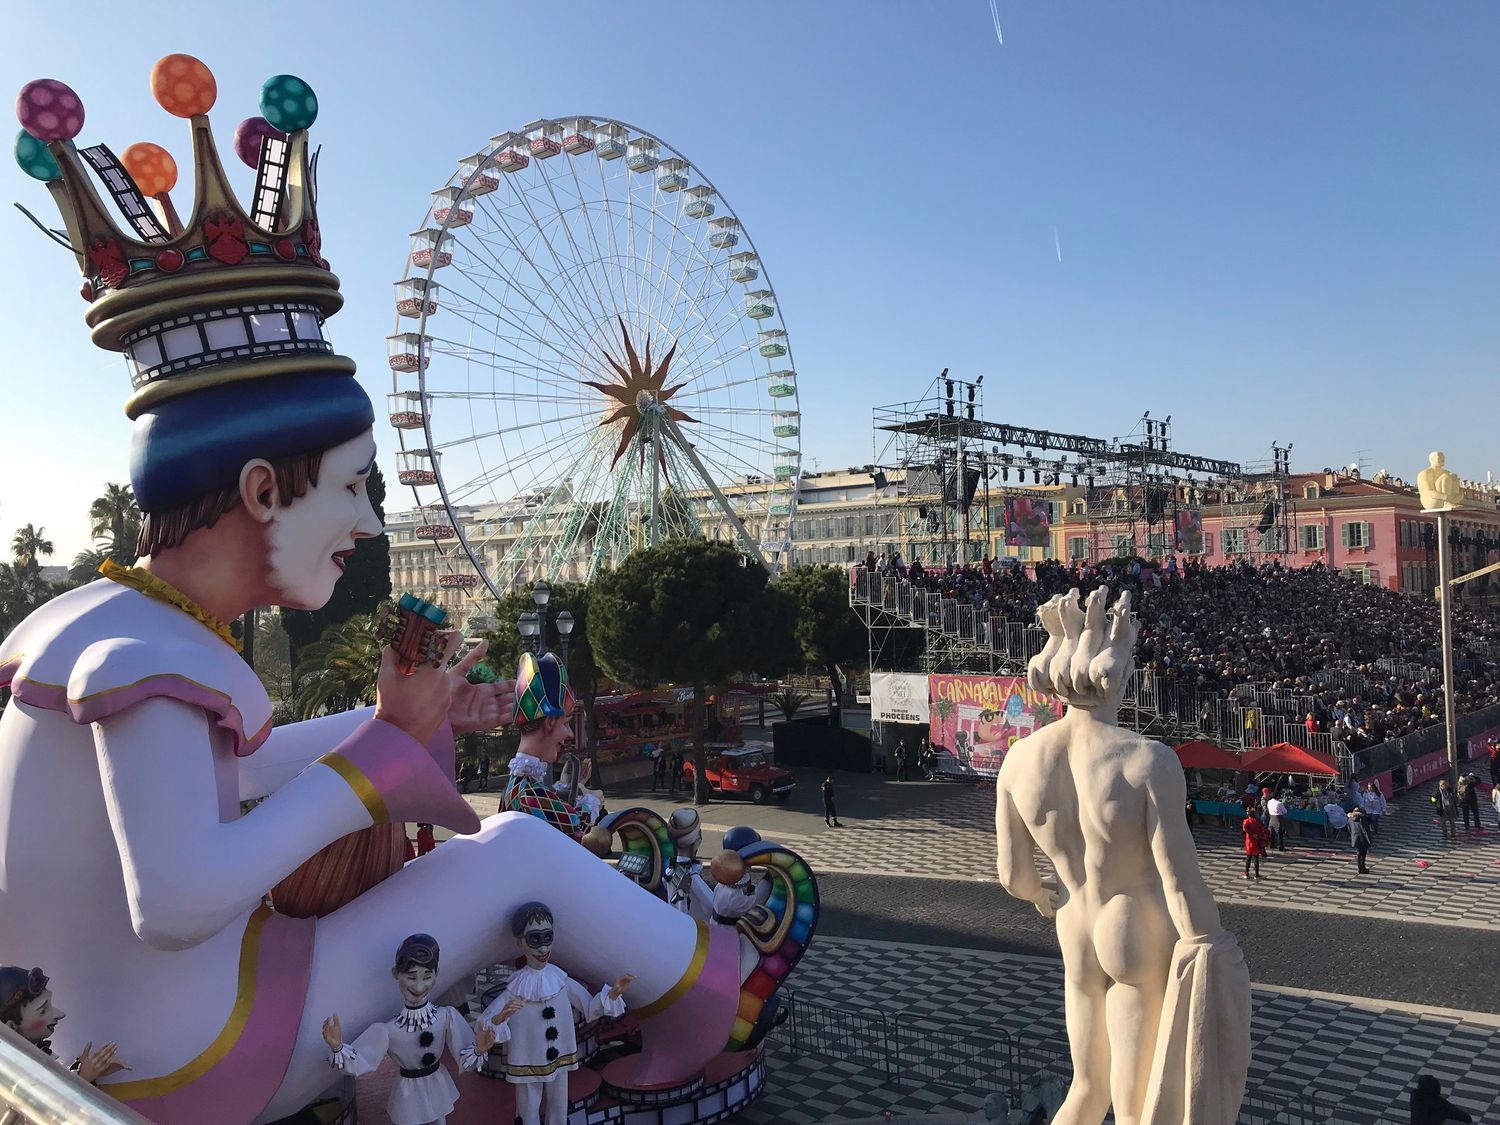 Le règne de sa Majesté Carnaval débute ce soir à Nice